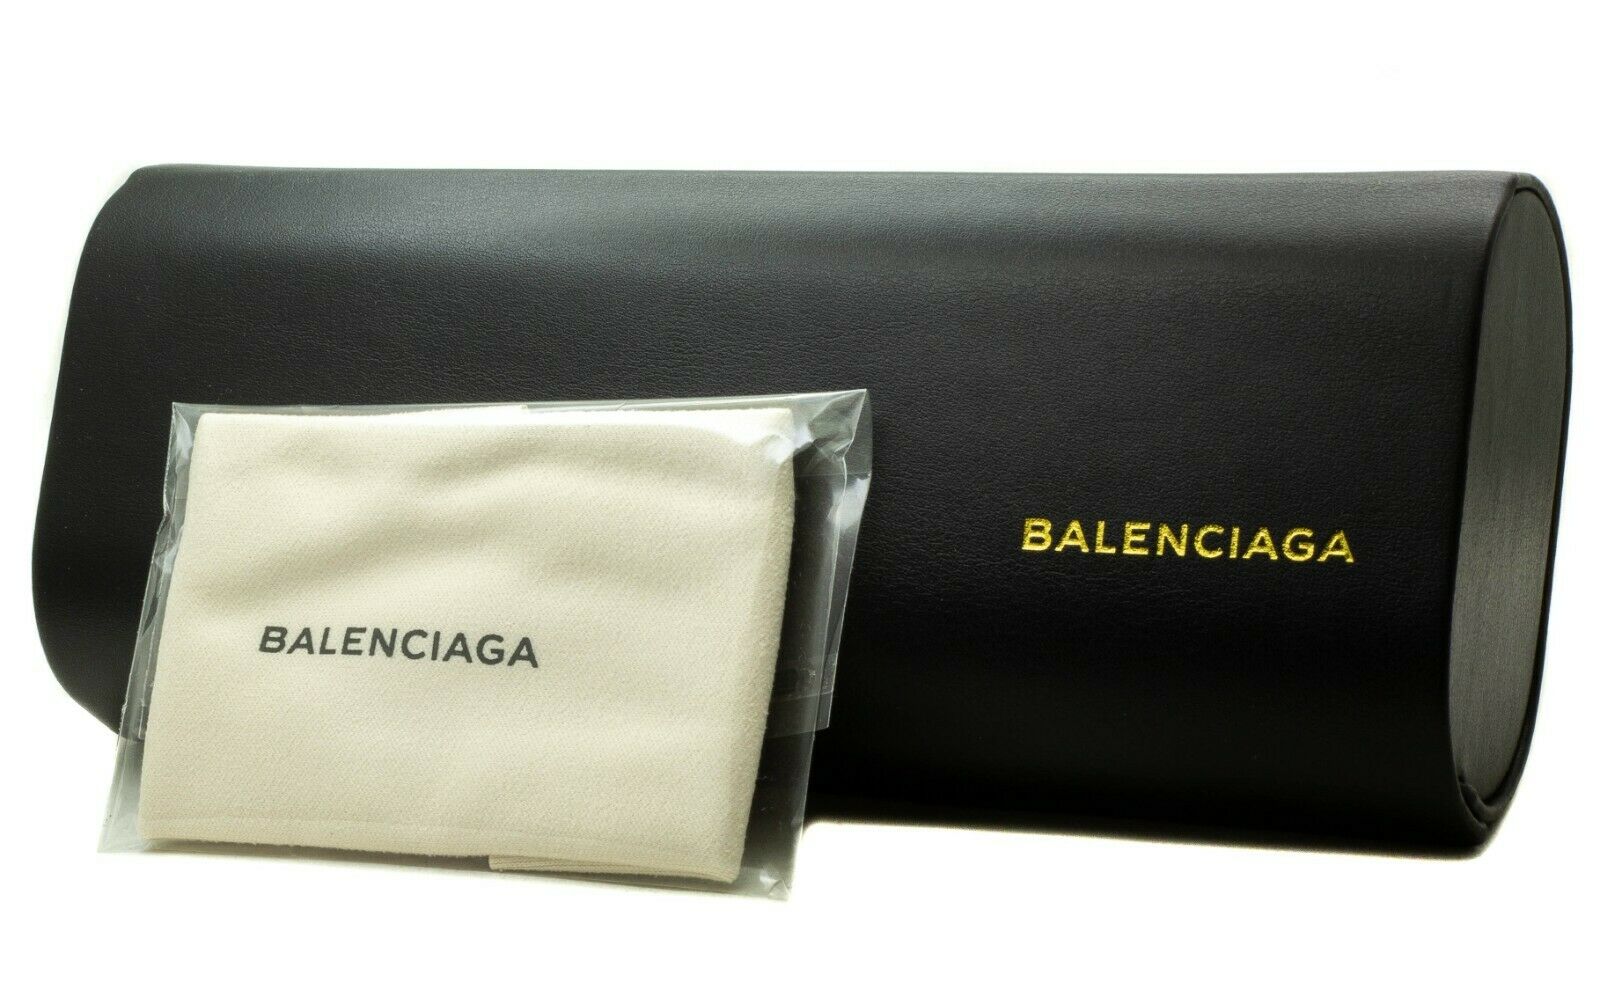 BALENCIAGA BA 5044 020 54mm Eyewear RX Optical Eyeglasses Frames New BNIB Italy